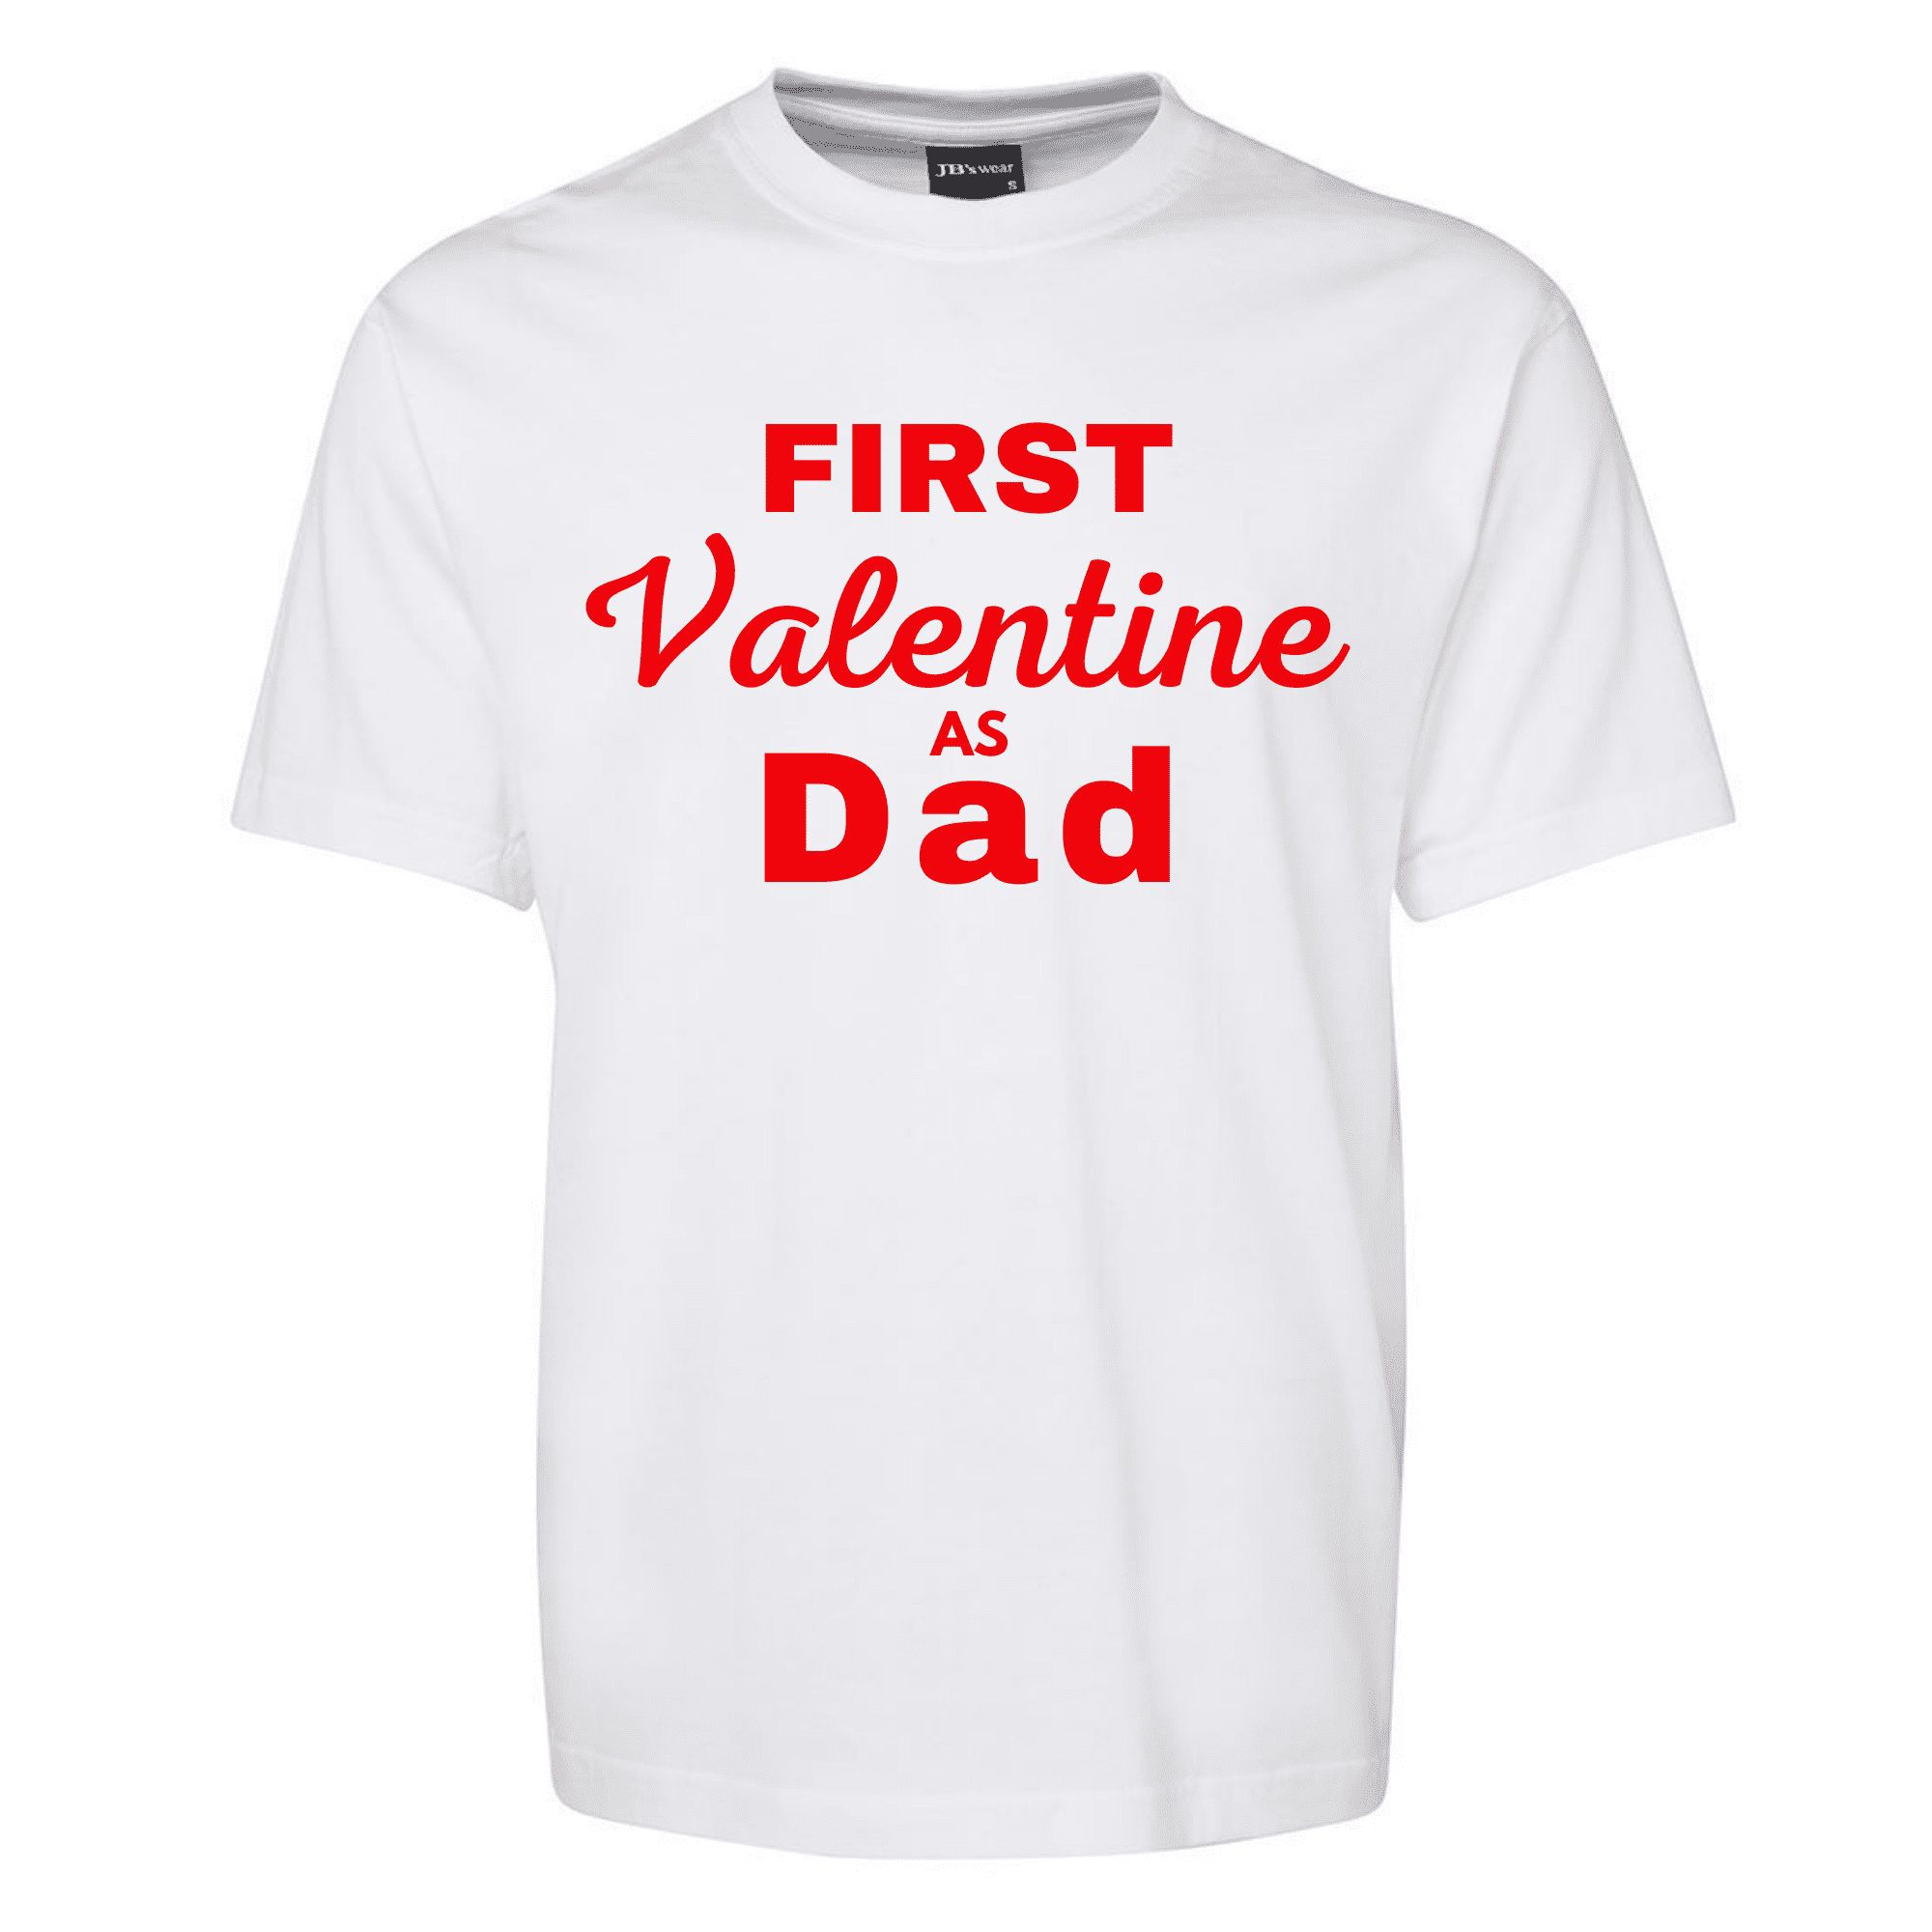 First-Valentine-as-Dad